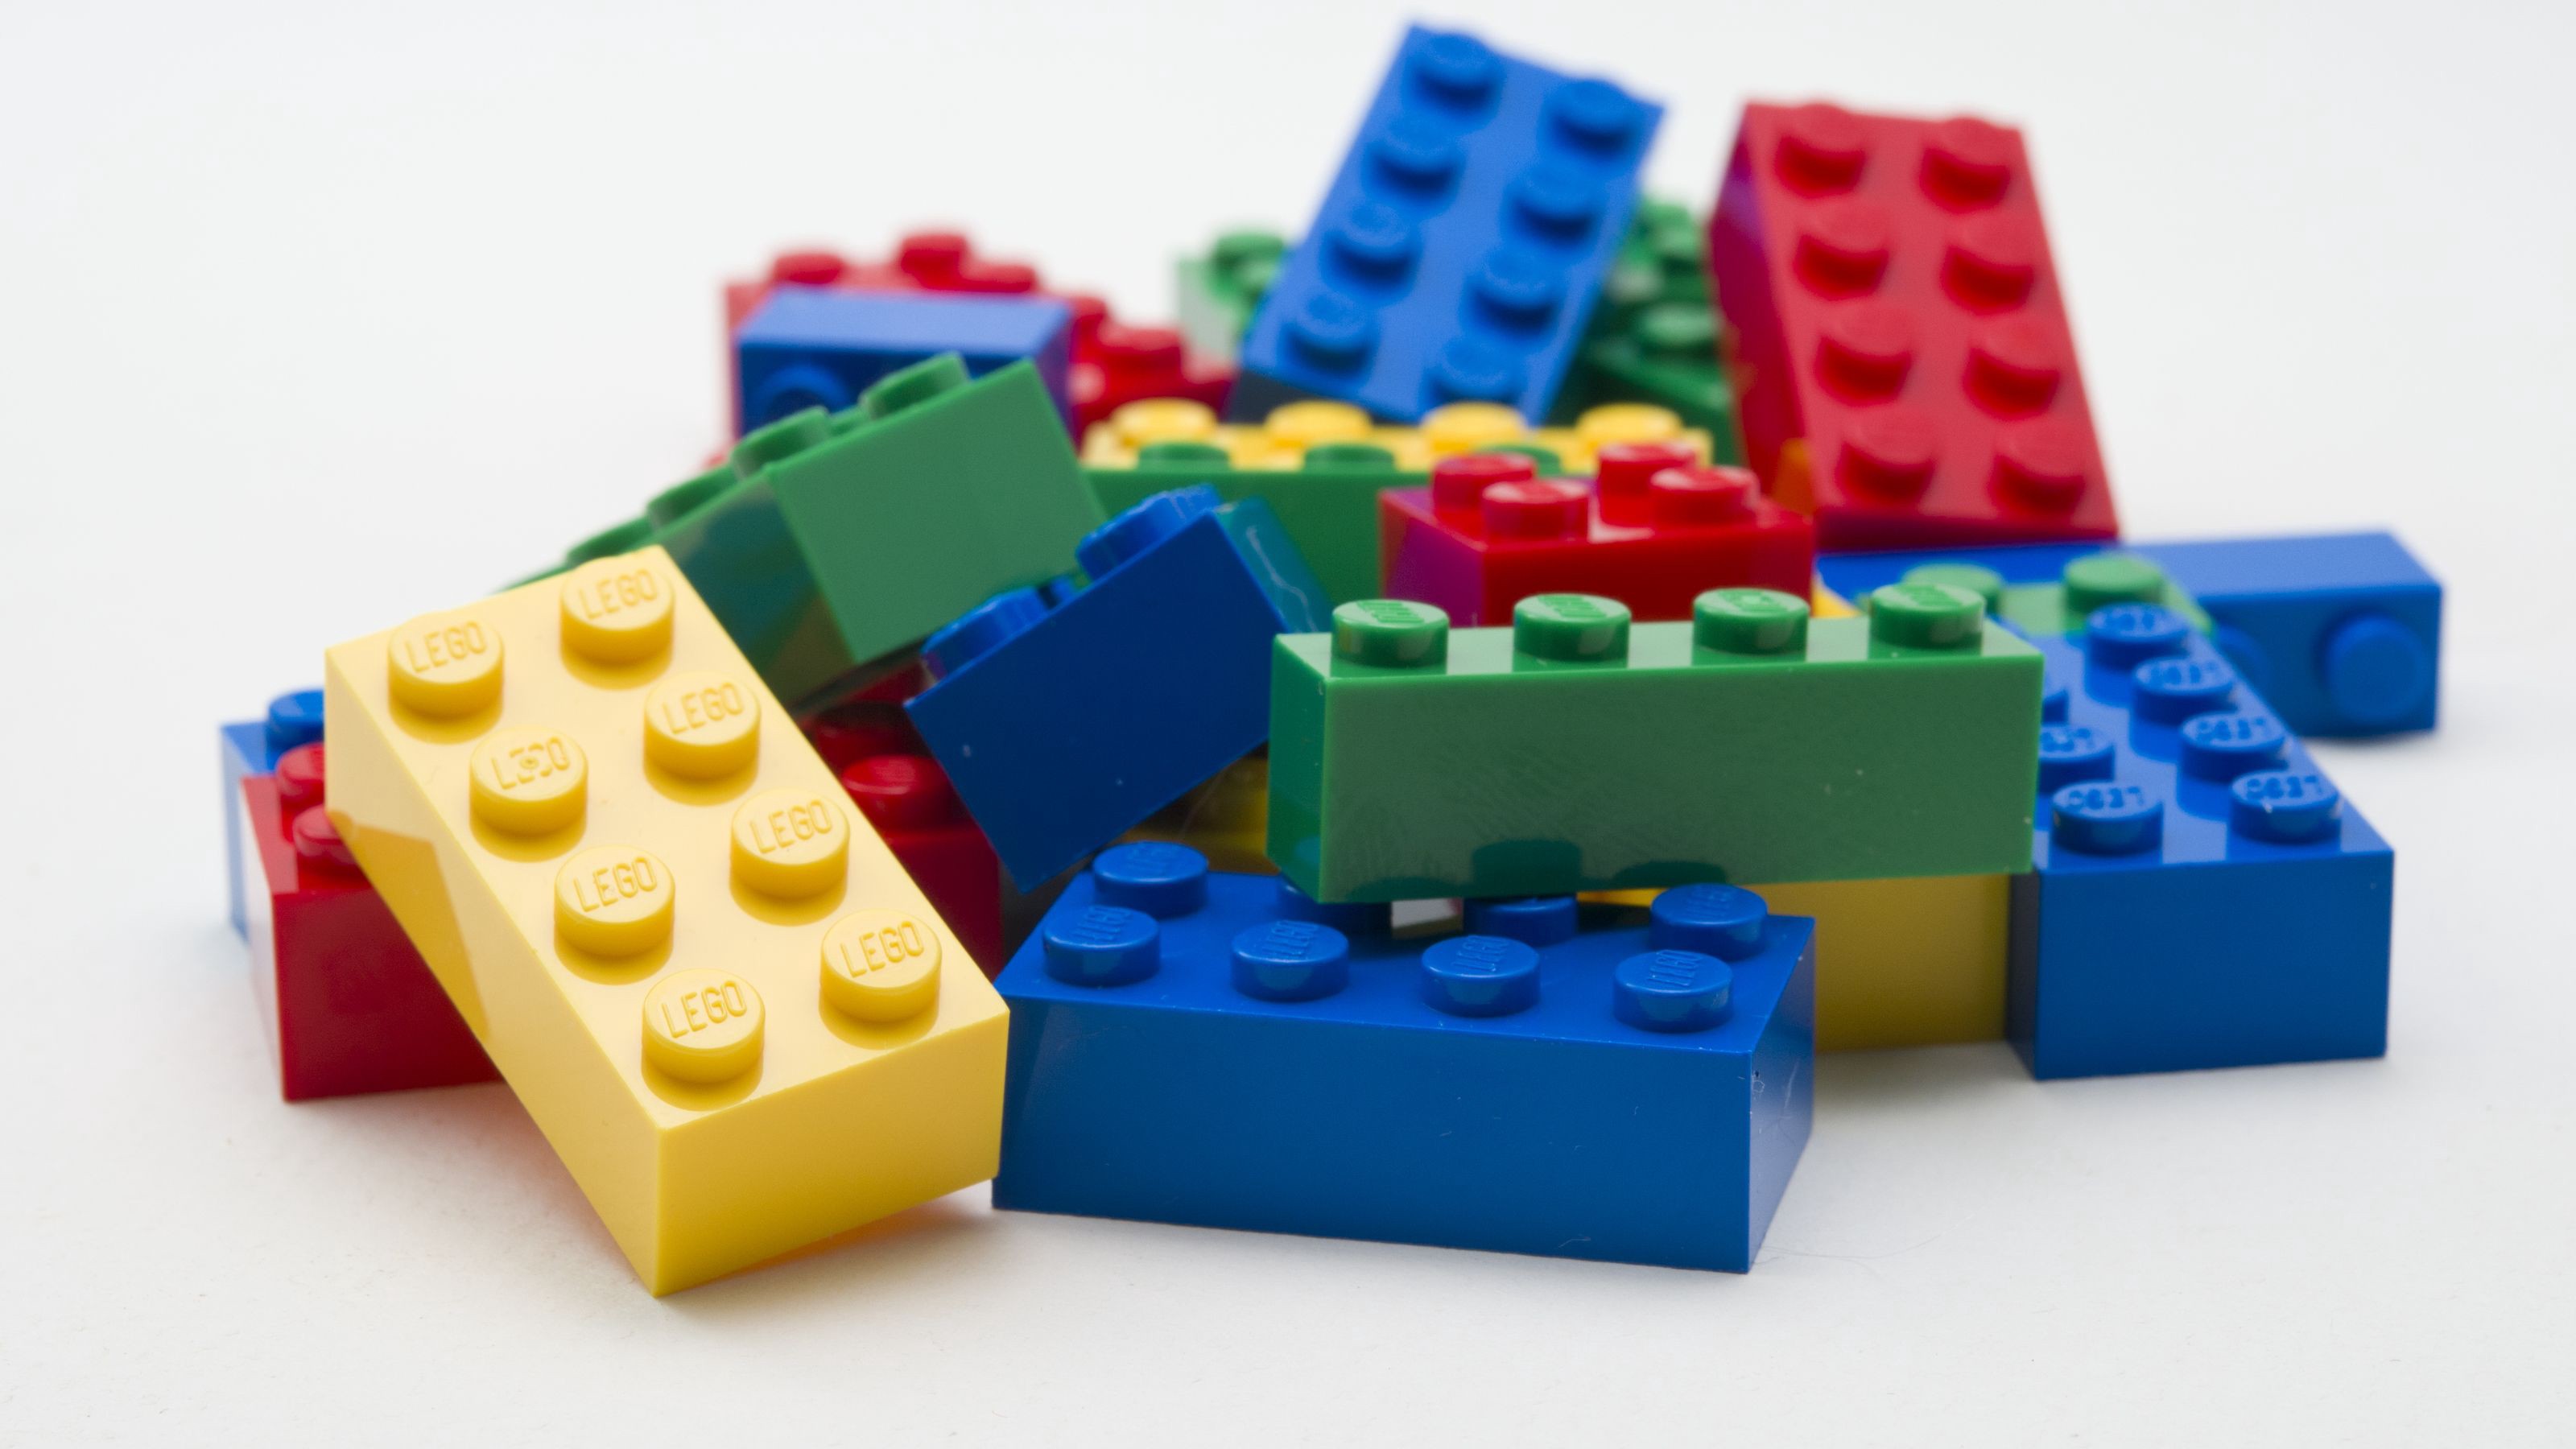 3. Cách thức cài đặt với các thành phần Lego khó khăn